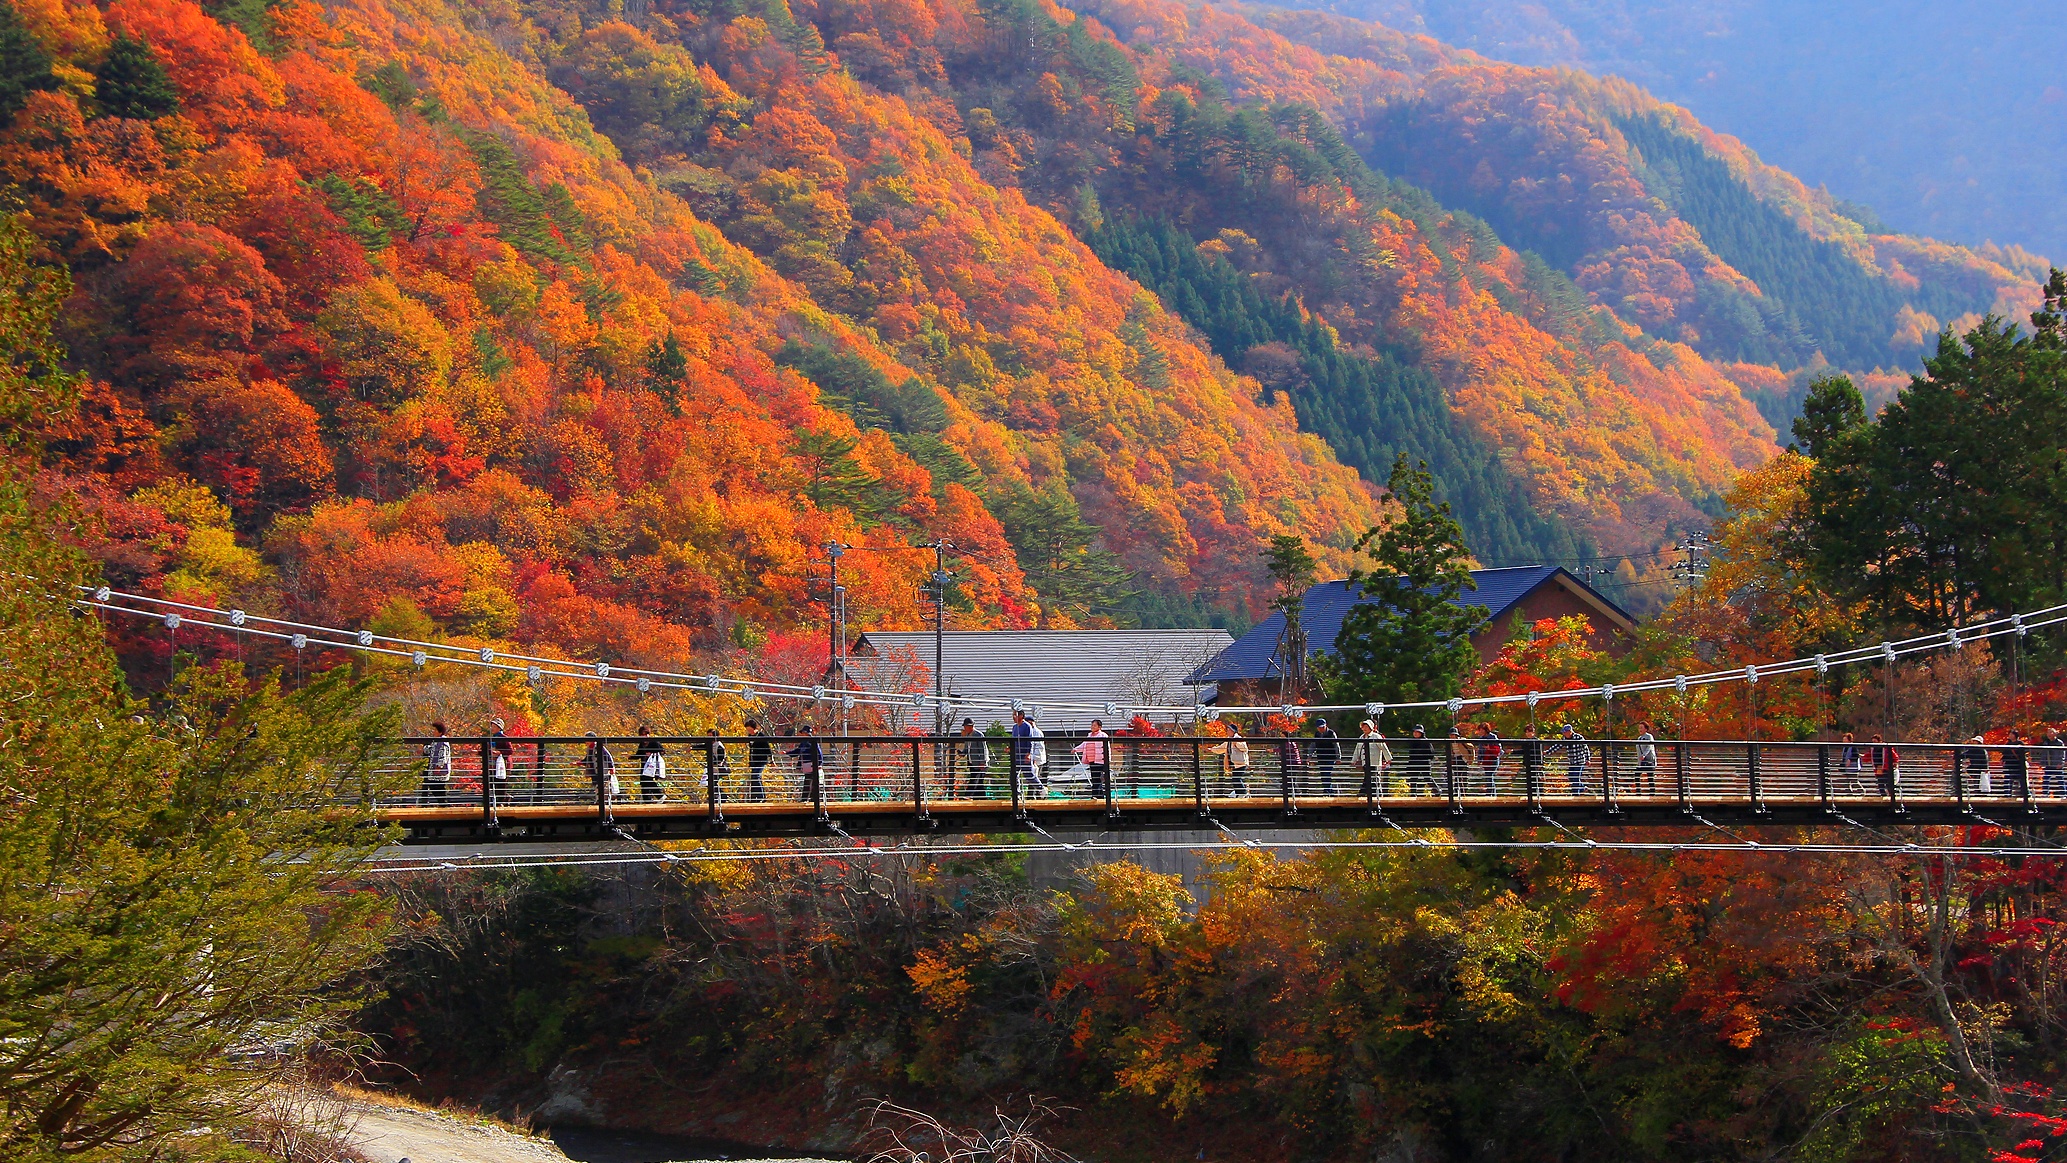 2011年に完成した観光スポット“四季折々の美しい”迫力満点の大吊り橋!水の郷の新しいシンボルです。